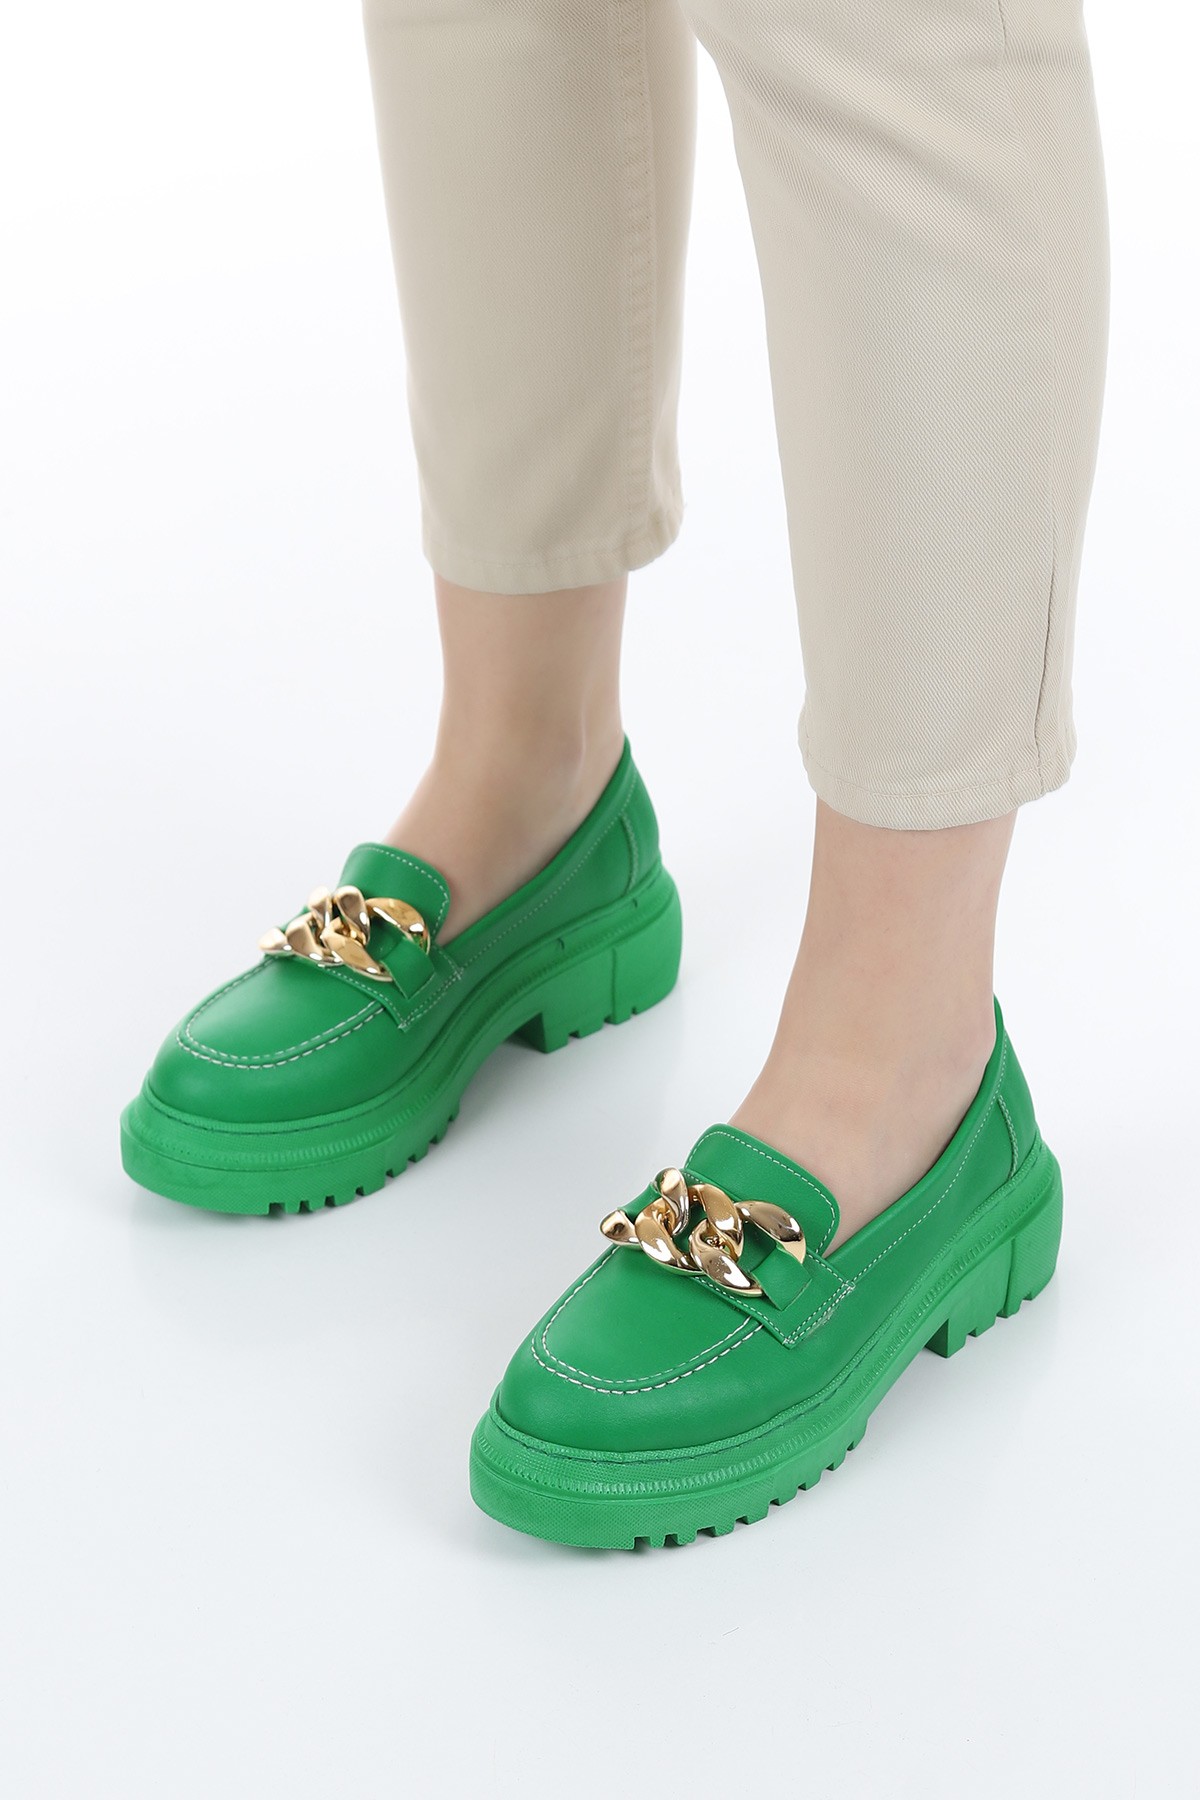 Yeşil Tokalı Kalın Taban Loafer Ayakkabı 157381